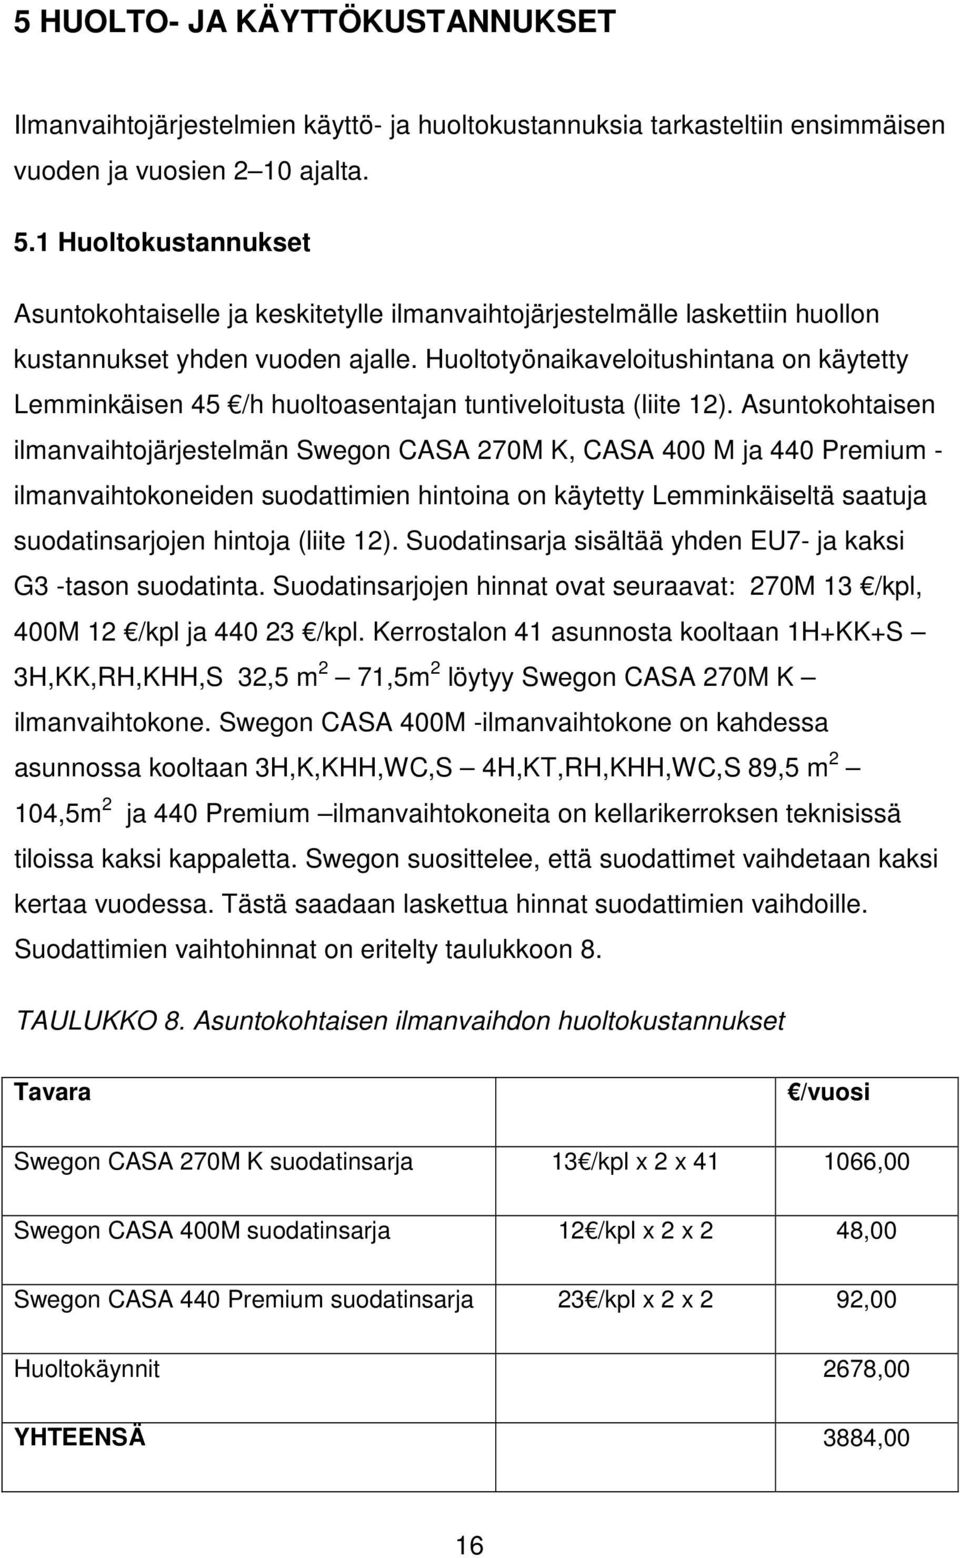 Huoltotyönaikaveloitushintana on käytetty Lemminkäisen 45 /h huoltoasentajan tuntiveloitusta (liite 12).